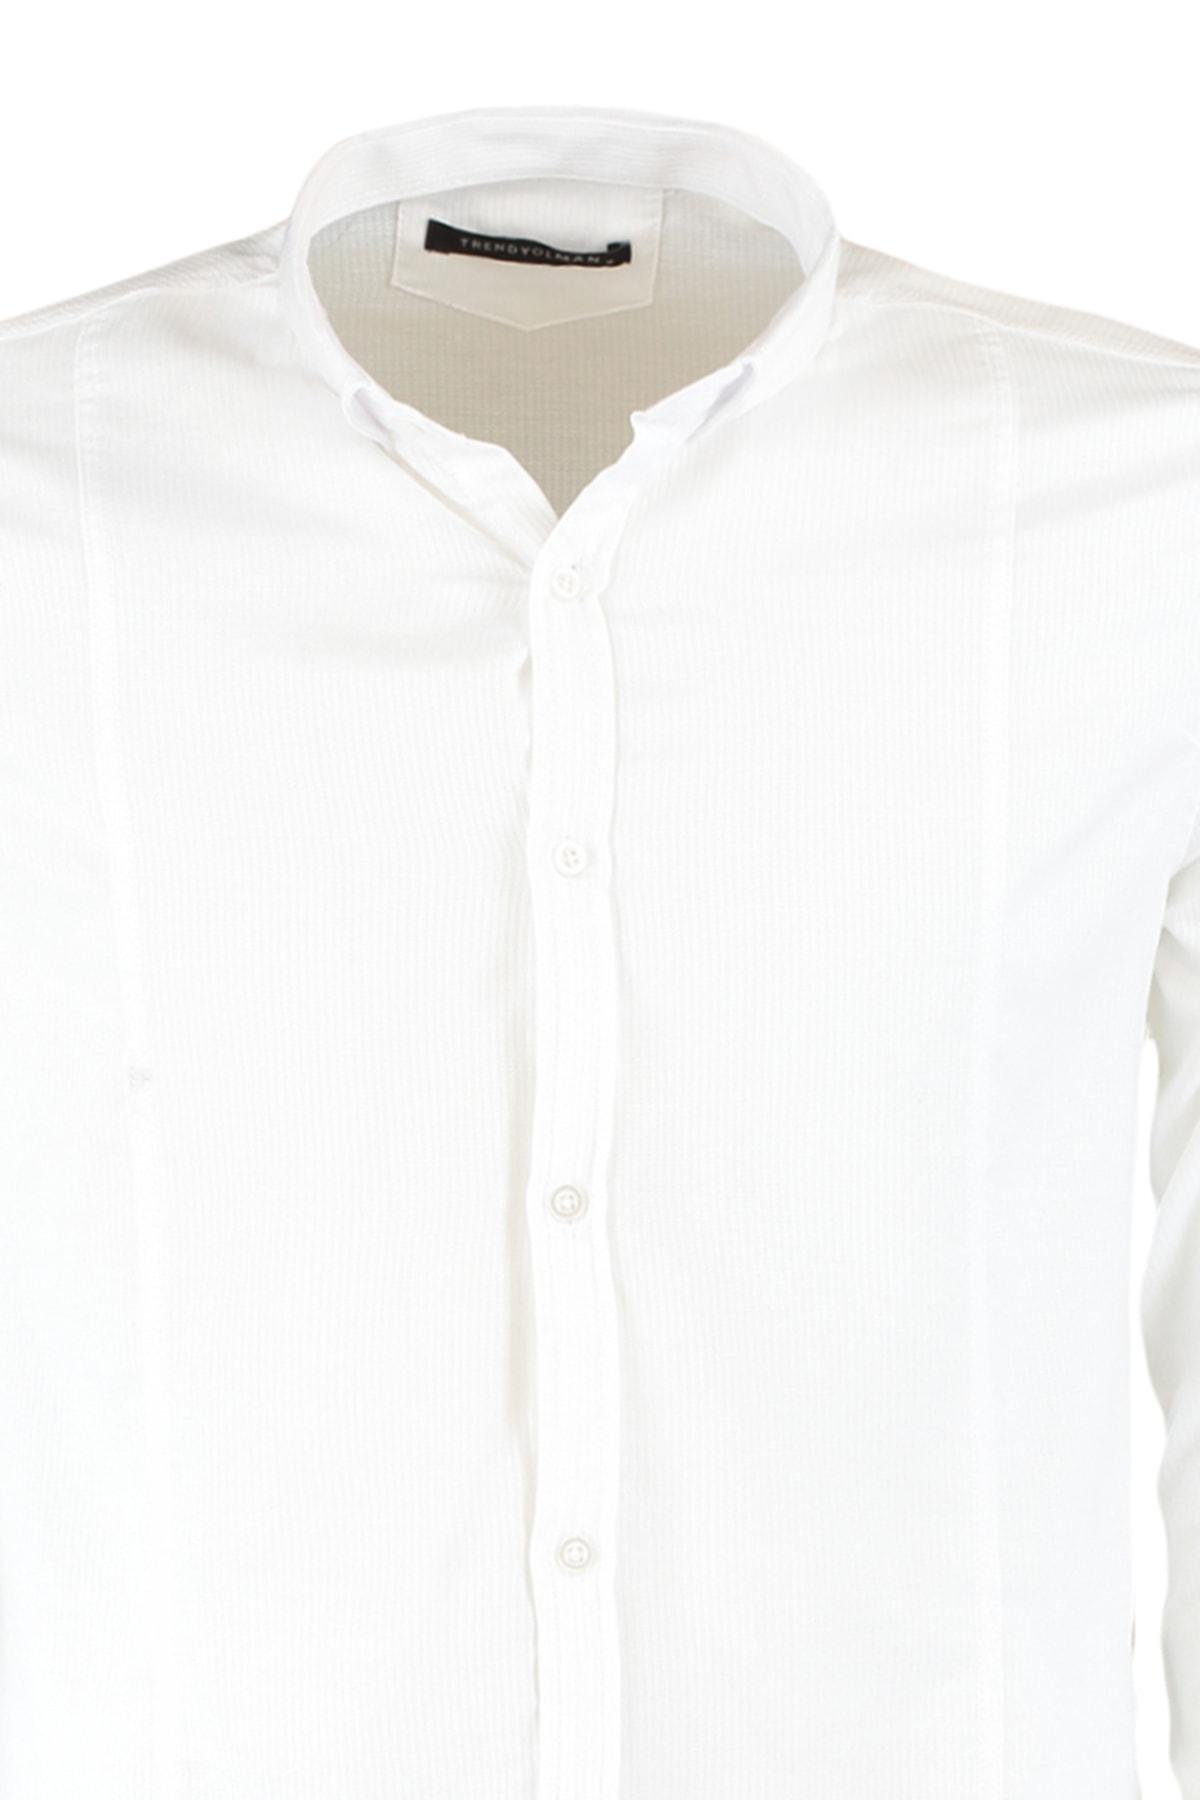 Trendyol - White Slim Shirt